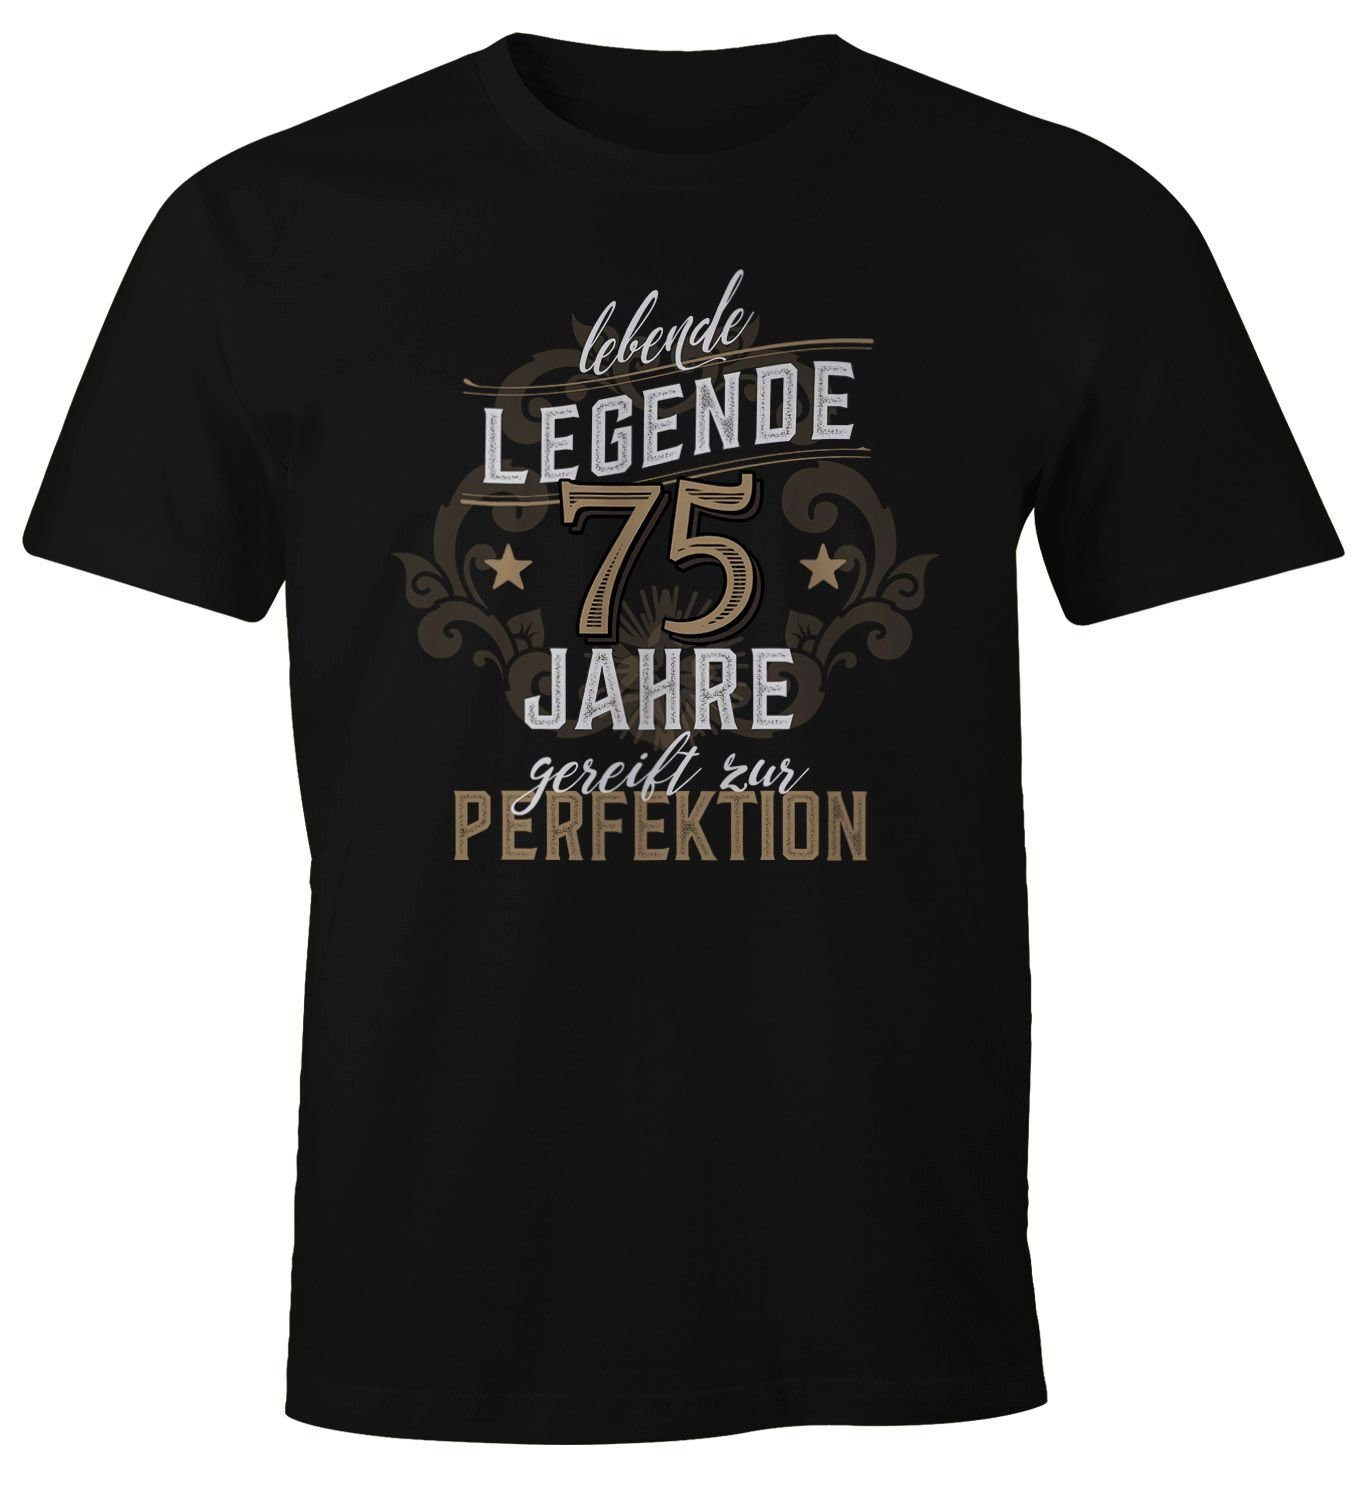 Print 30-80 Legende Herren Geburtstag mit schwarz Lebende 75 Jahre Geschenk T-Shirt Moonworks® Print-Shirt MoonWorks